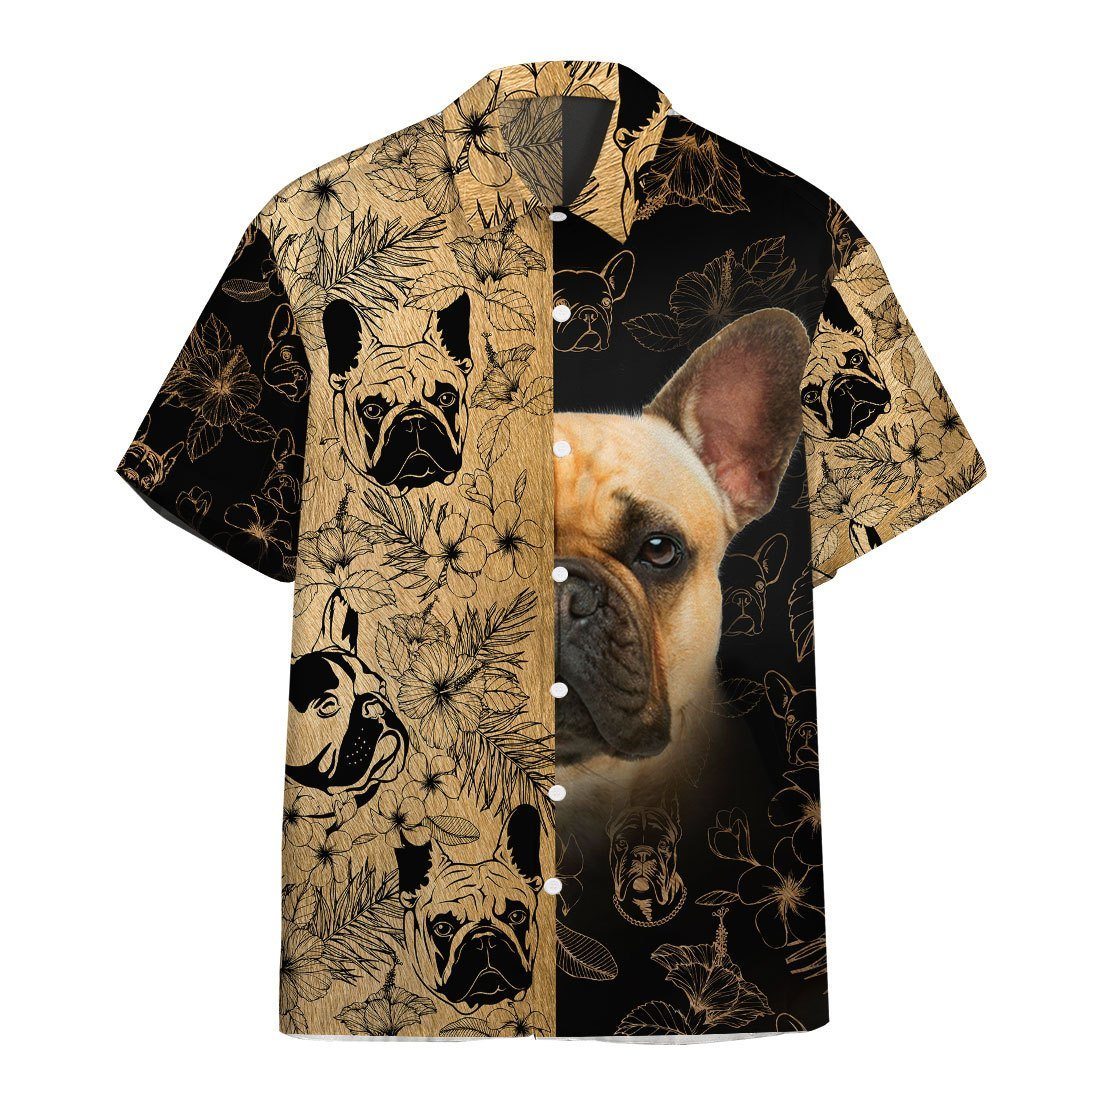 Gearhumans 3D French Bulldog Hawaii shirt ZZ29031 Hawai Shirt Short Sleeve Shirt S 